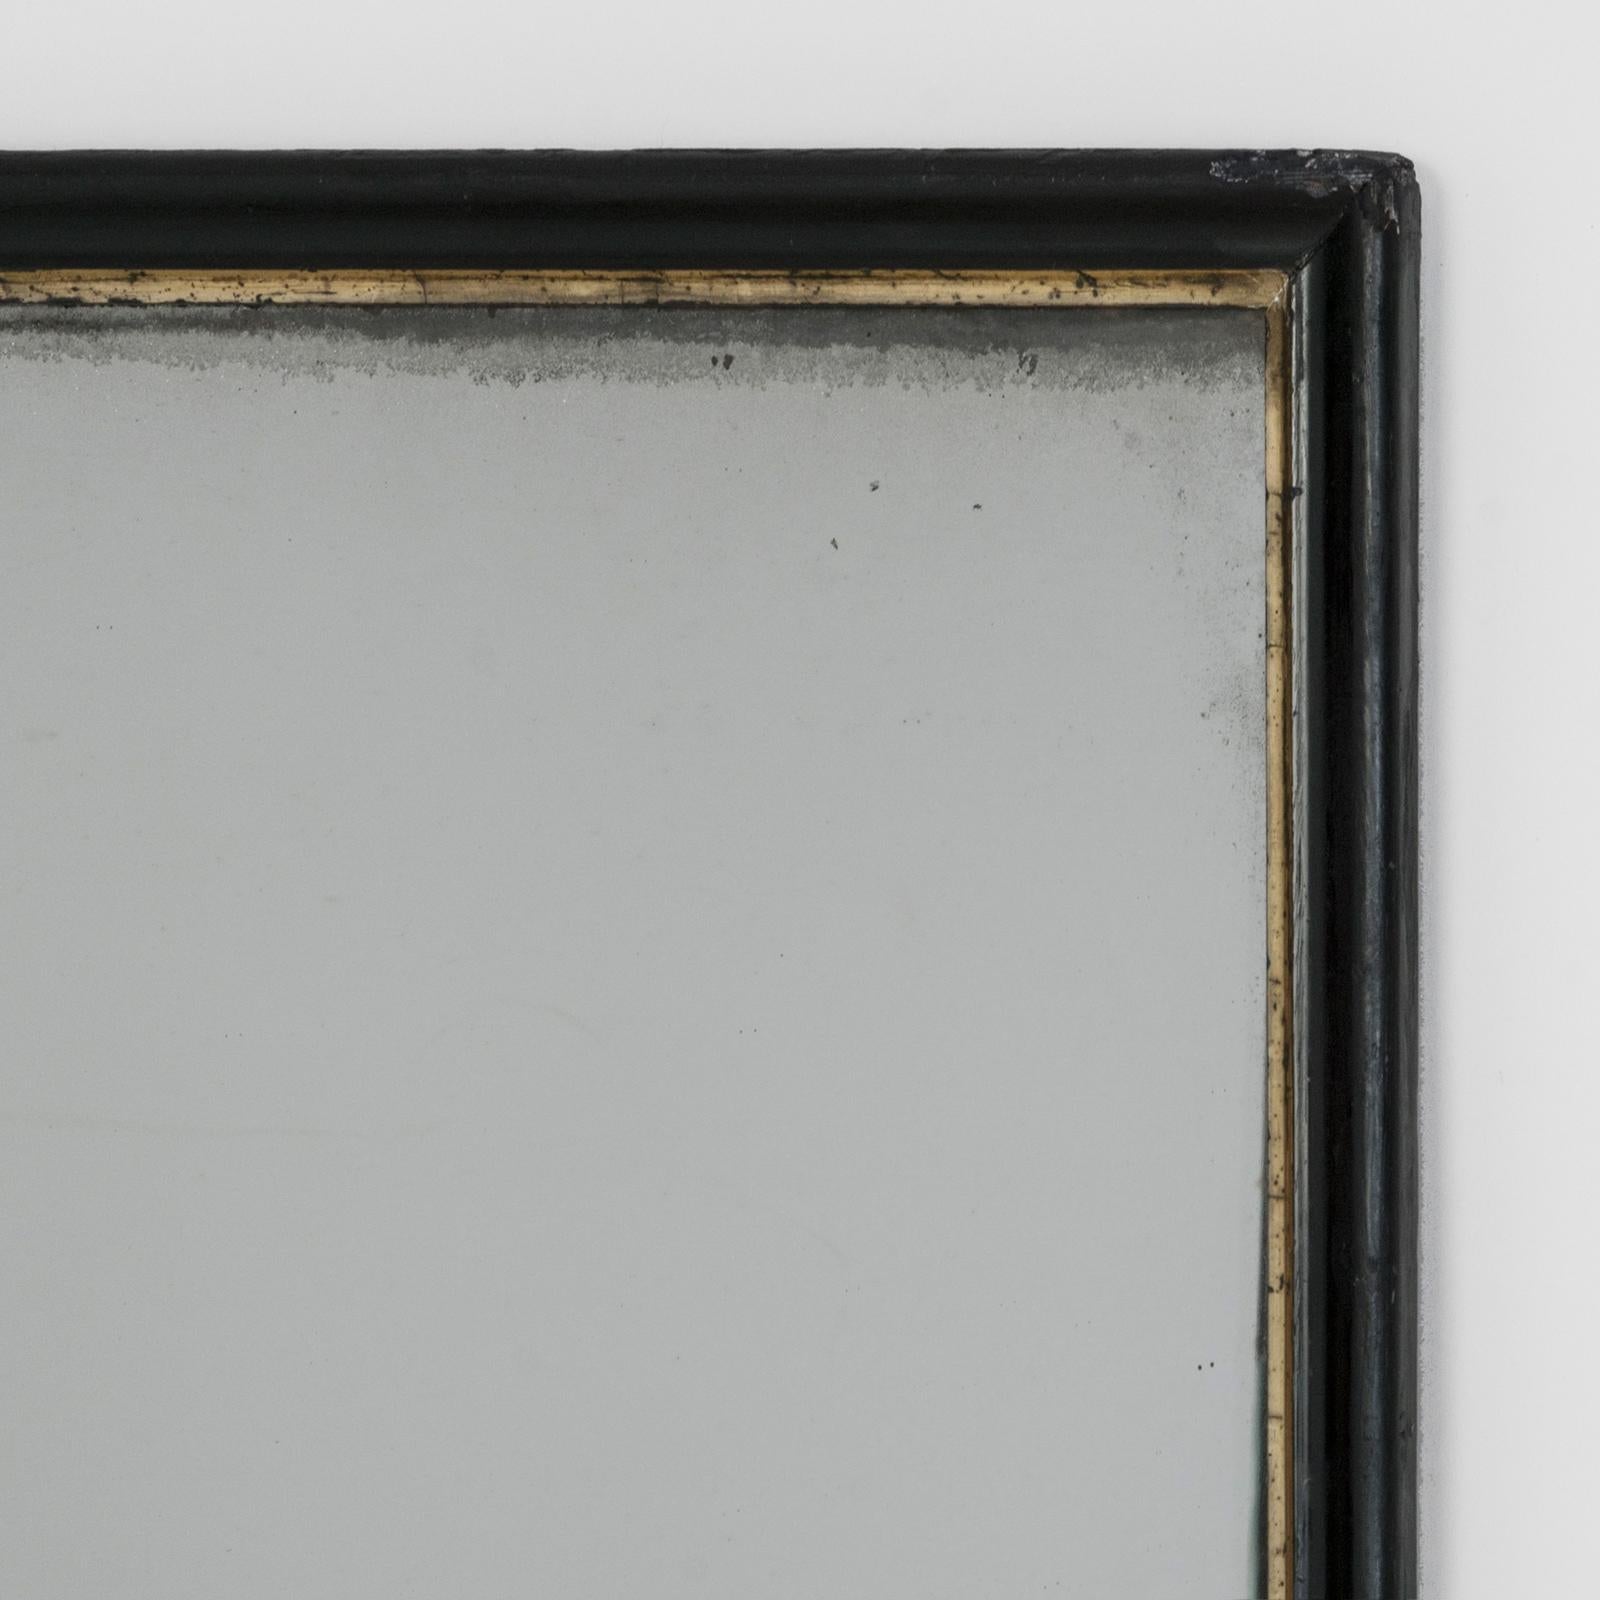 Voici un majestueux miroir rectangulaire français, de style Napoléon III, datant d'environ 1880-1890. Son cadre combine élégamment des nuances de noir et d'or avec subtilité et grâce.

La découverte d'un miroir antique Napoléon III de cette taille